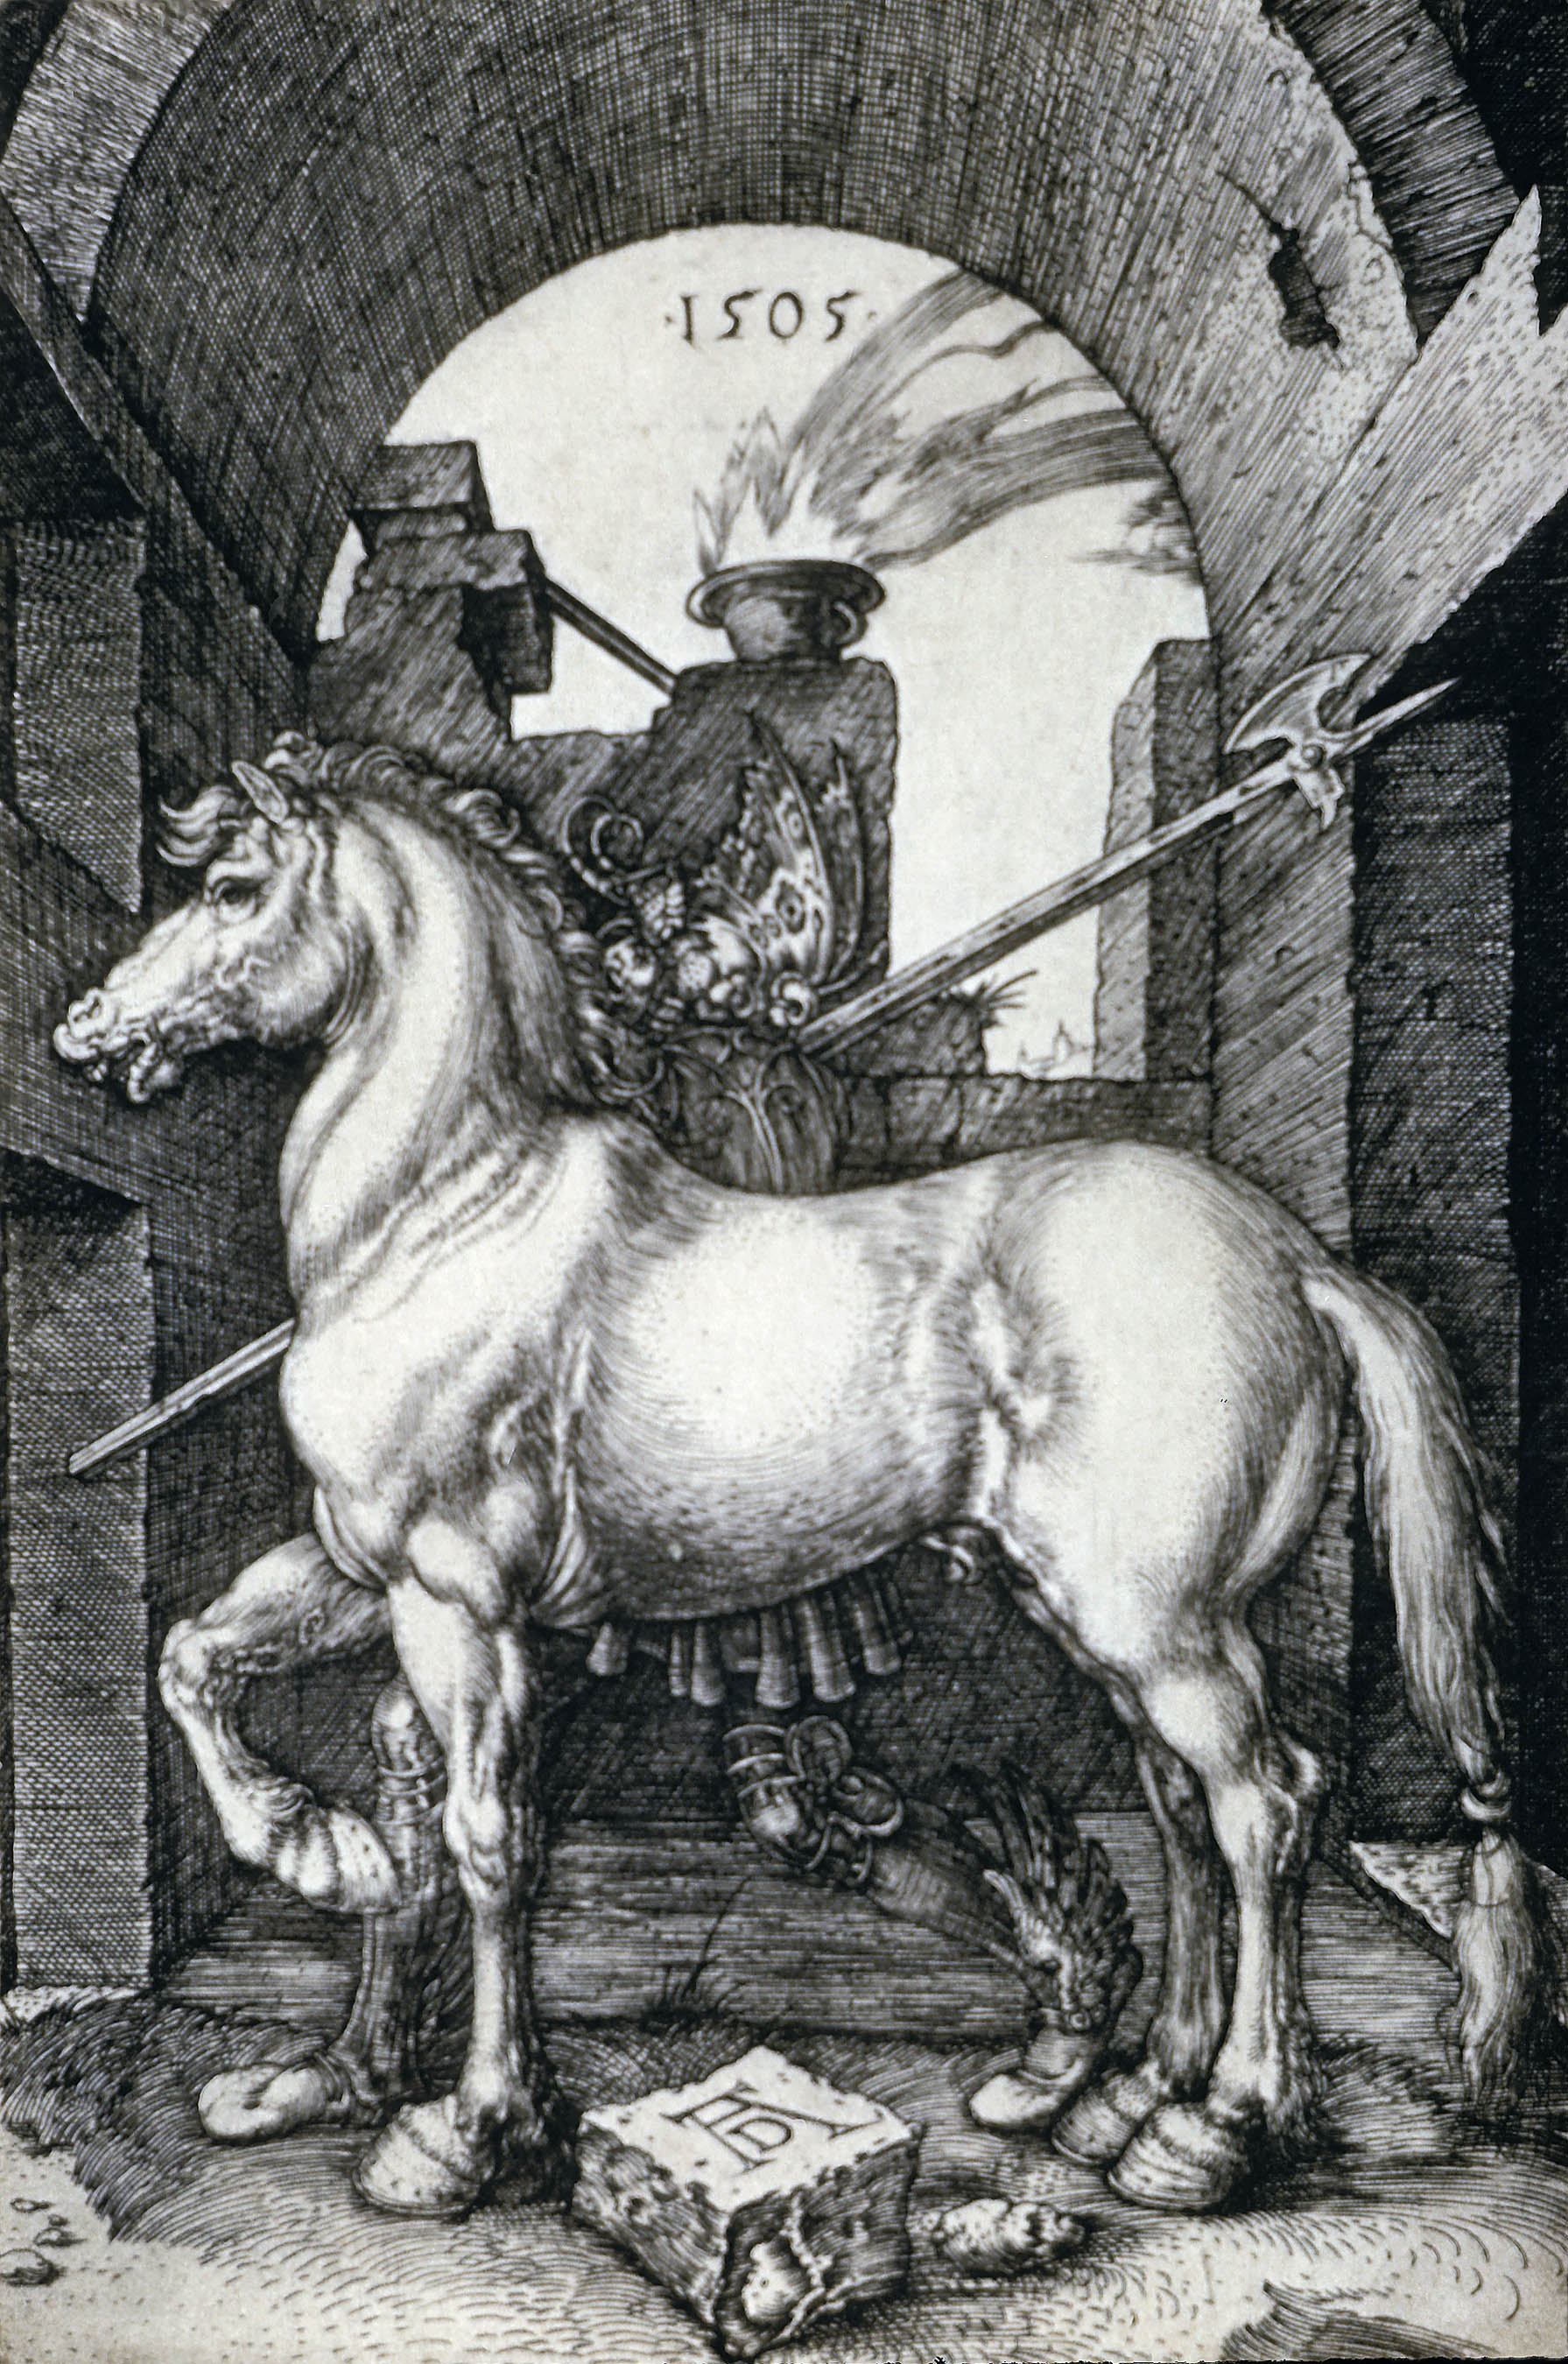 Mały Koń by Albrecht Dürer - 1505 - - 